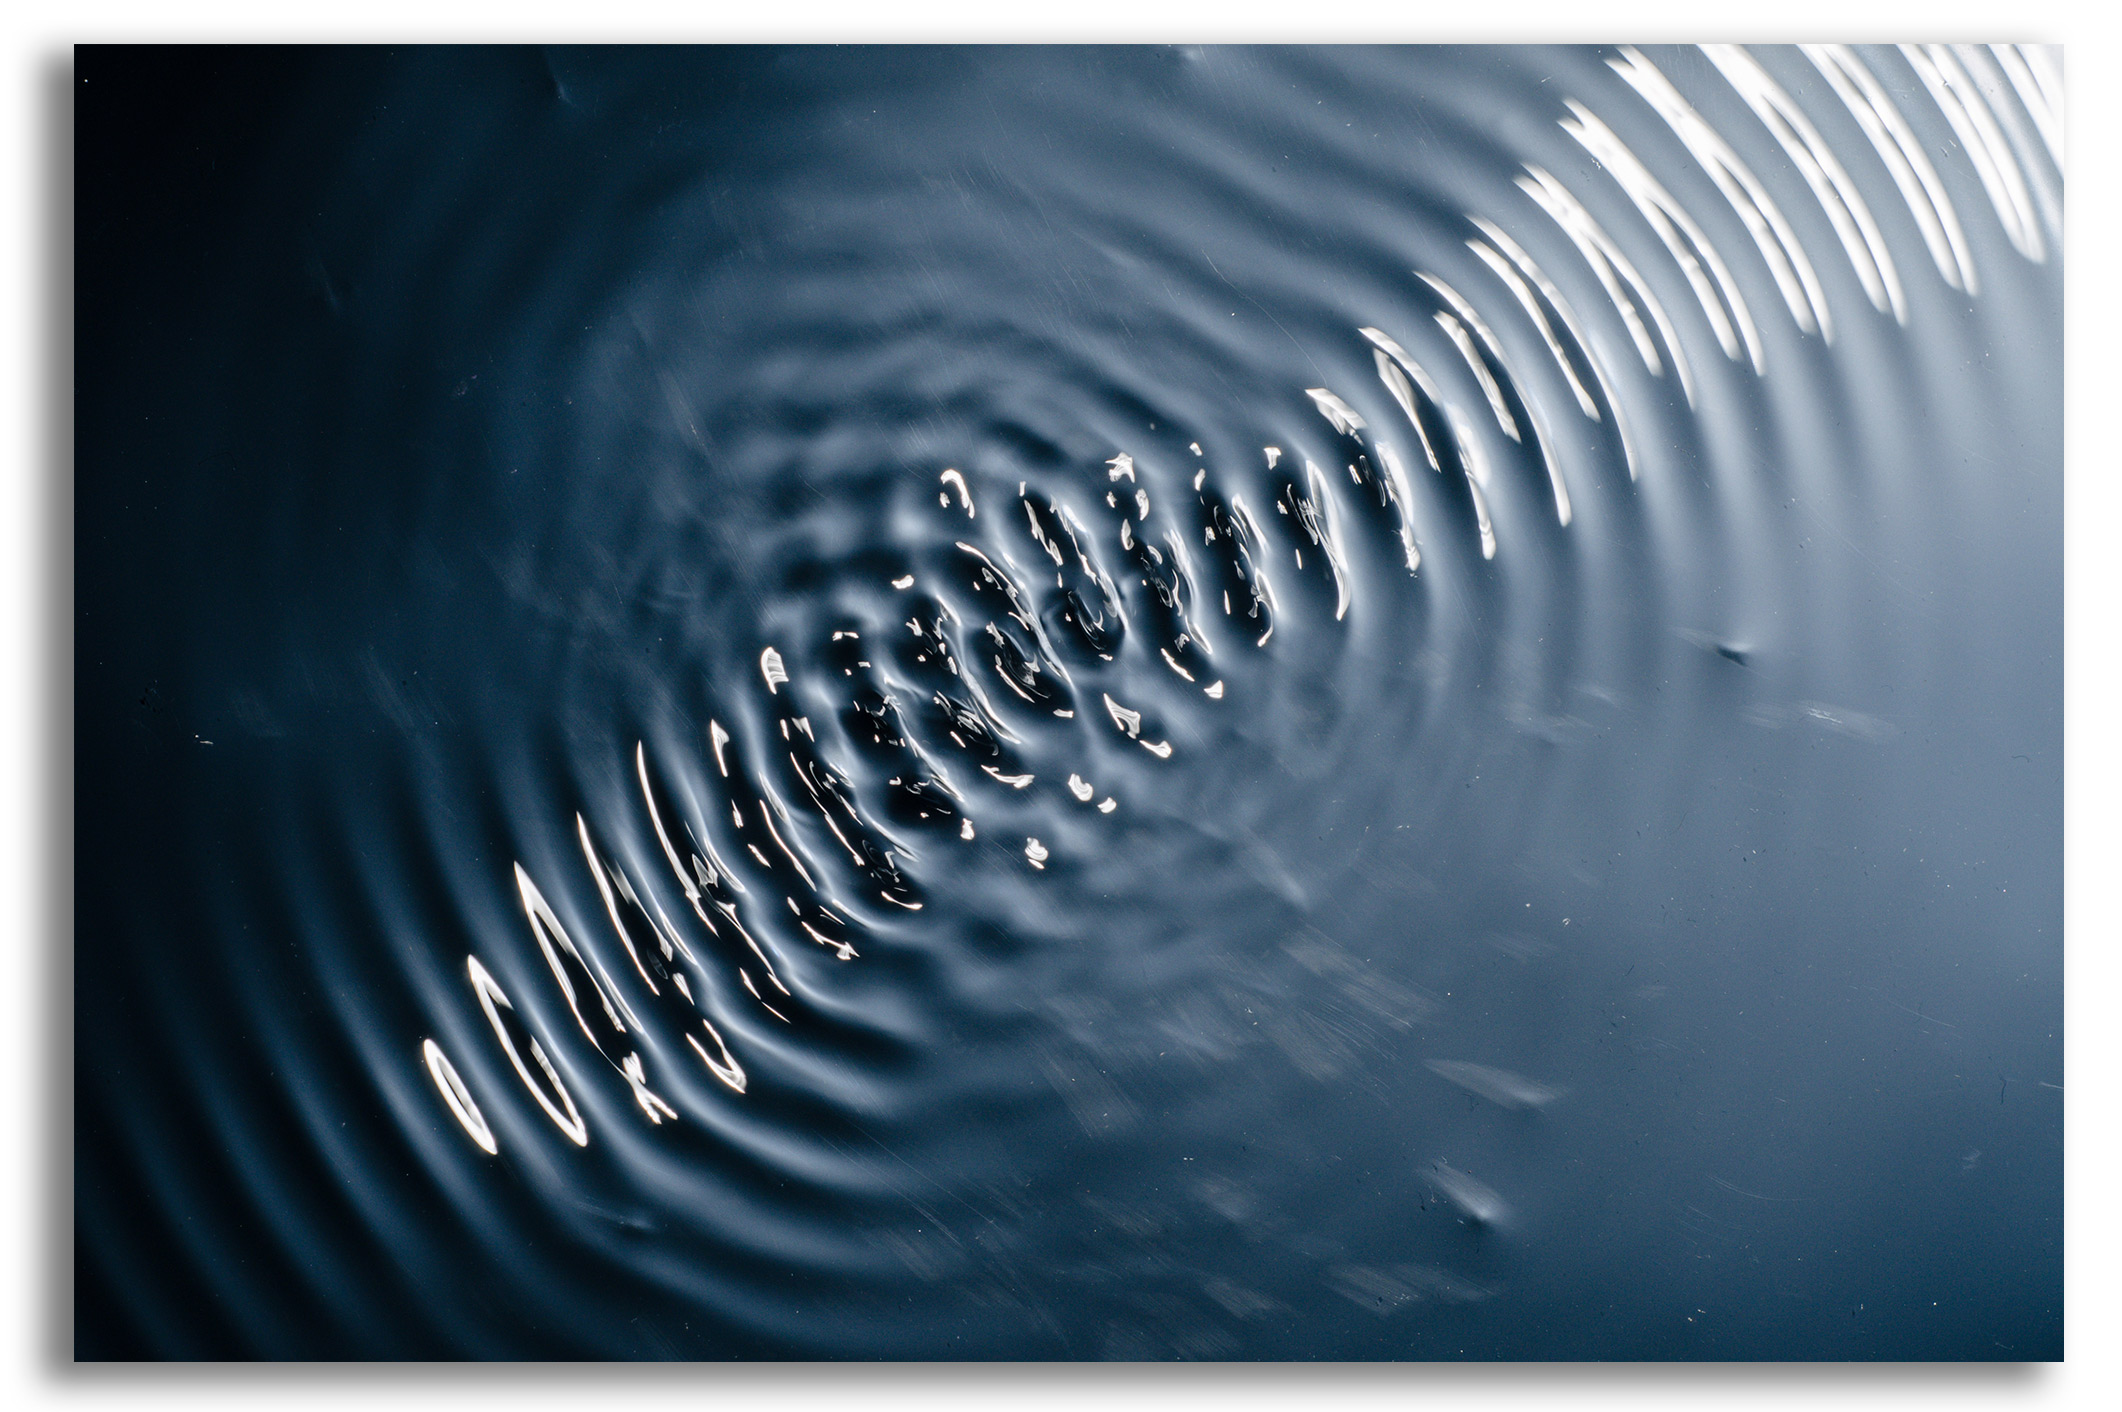 Cymatics and Vibrational Physics